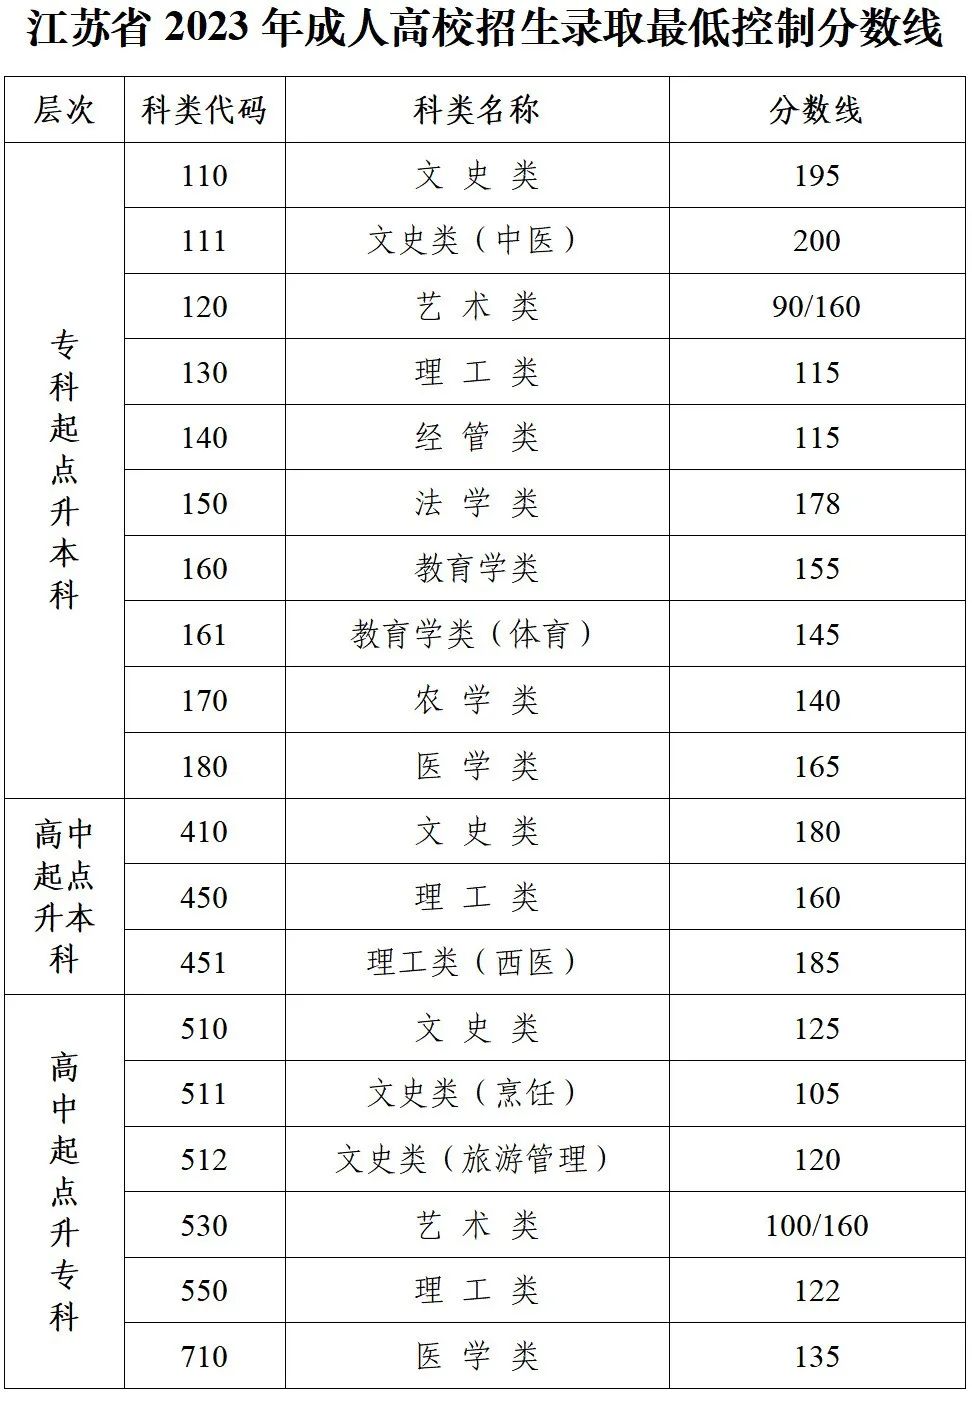 江苏省2023年成人高考录取最低控制分数线公布